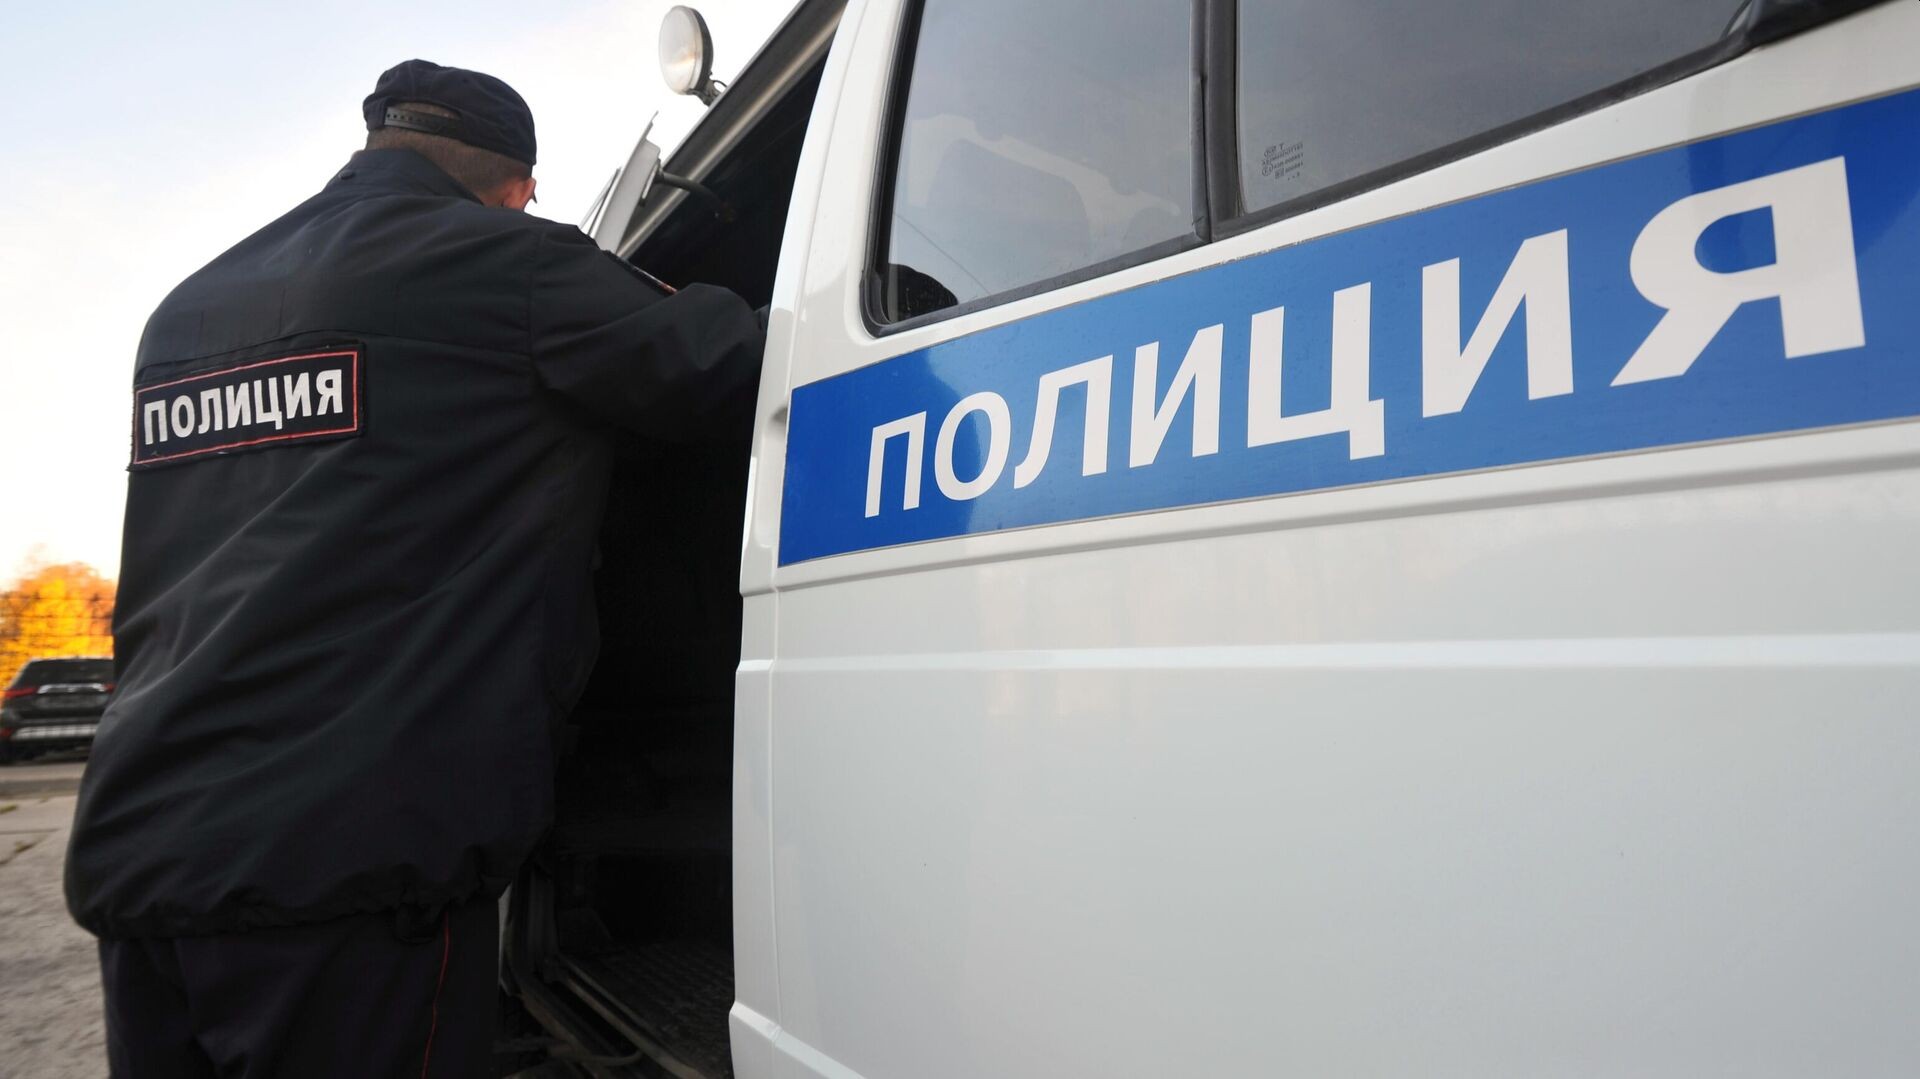 Во Владивостоке неизвестные устроили стрельбу, есть пострадавшие